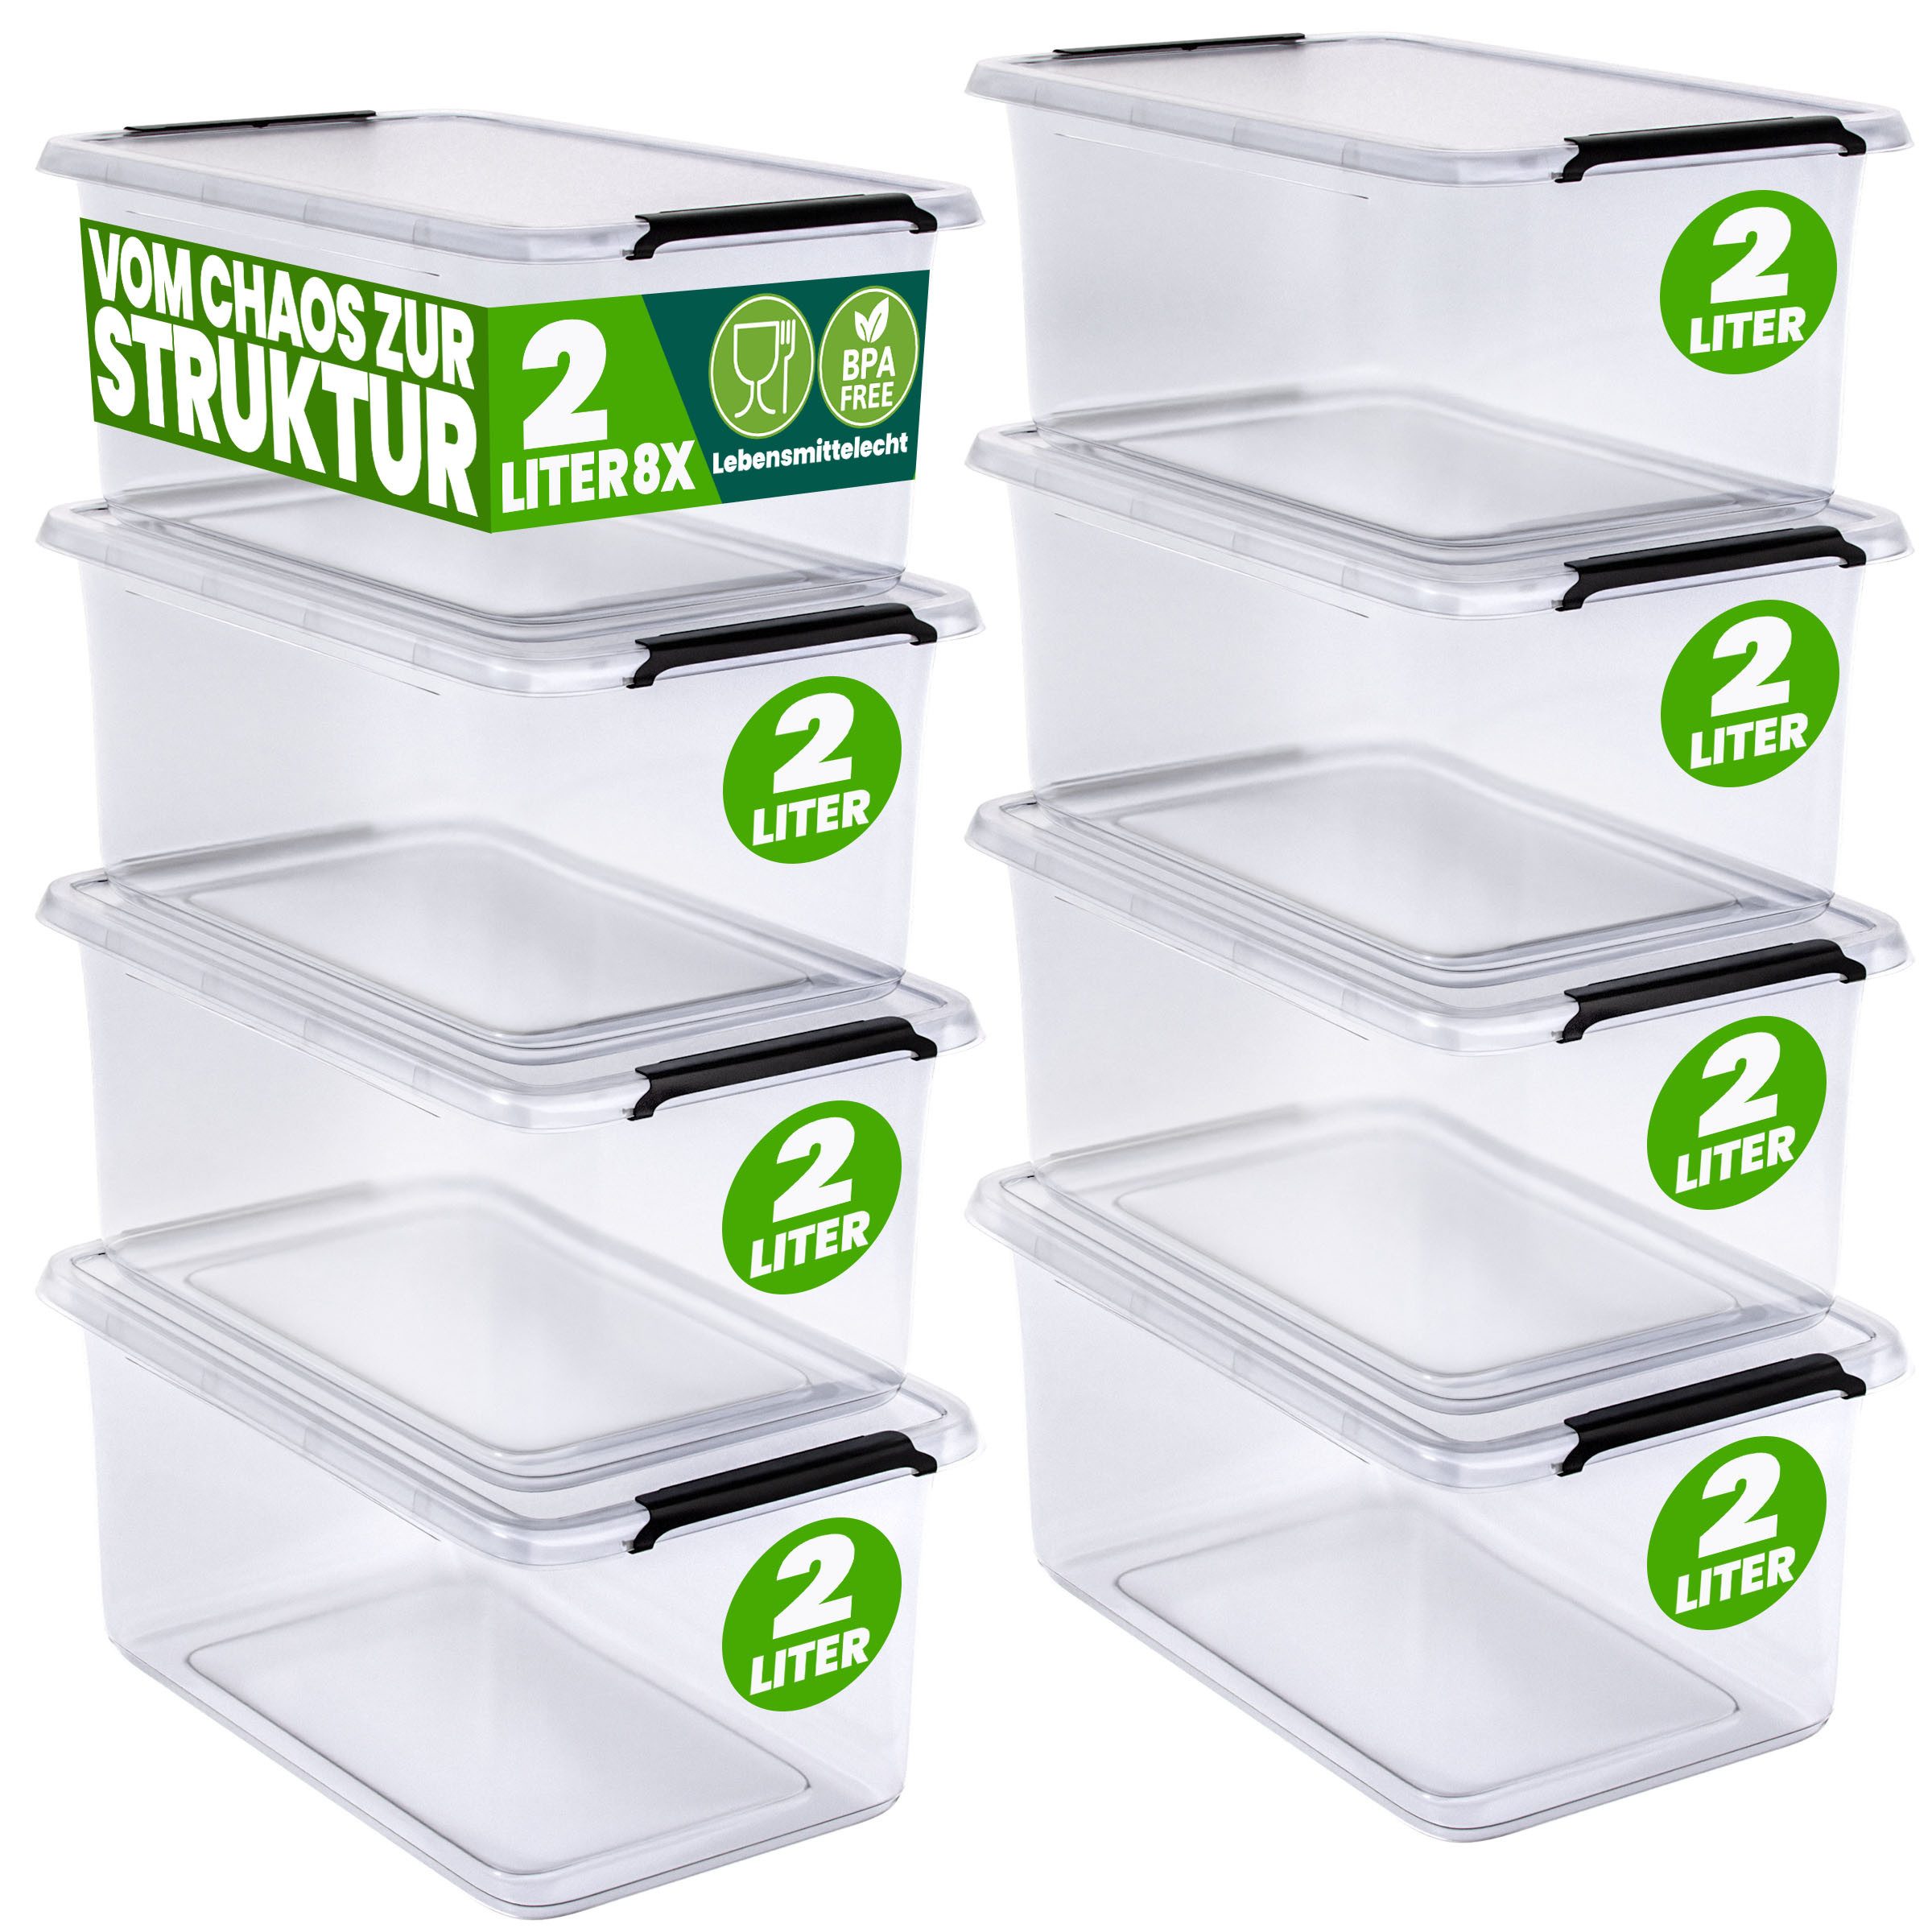 Deuba Aufbewahrungsbox, 2L Deckel Kunststoff Organizer Ordnungsboxen BPA frei stapelbar Küche